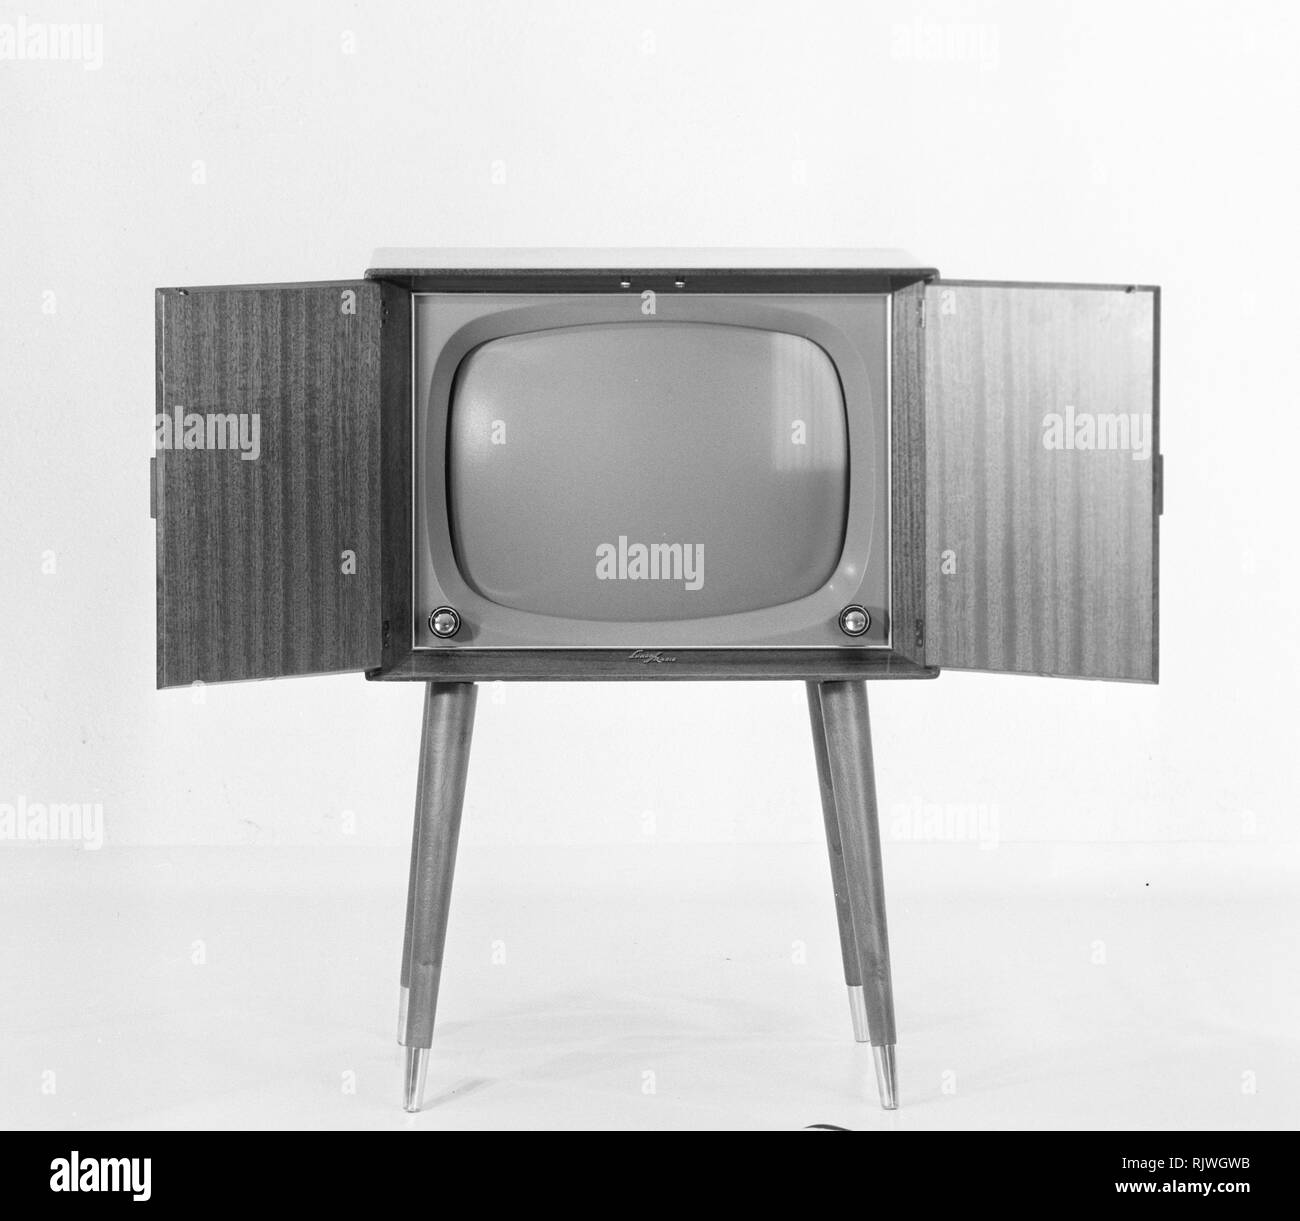 La télévision dans les années 1950. Début de téléviseur avec portes pliantes que vous pourriez fermer lorsqu'il n'est pas regarder la télévision. Mai 1959. La Suède Banque D'Images